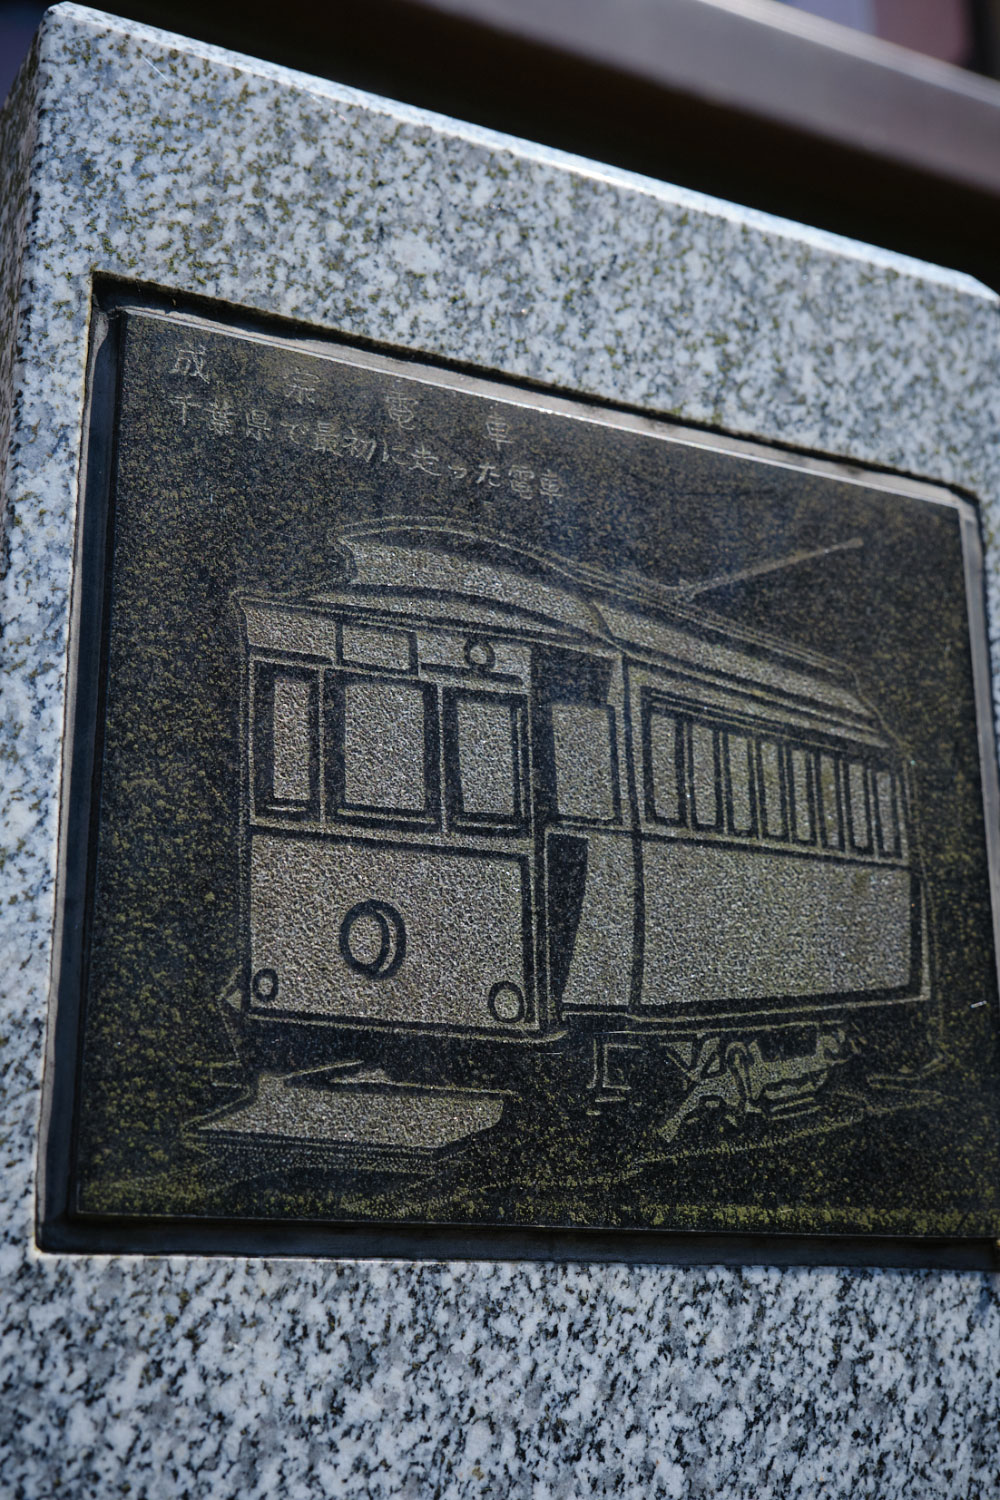 京成成田駅前と宗吾霊堂の千葉交通バス乗り場には記念の石碑あり。